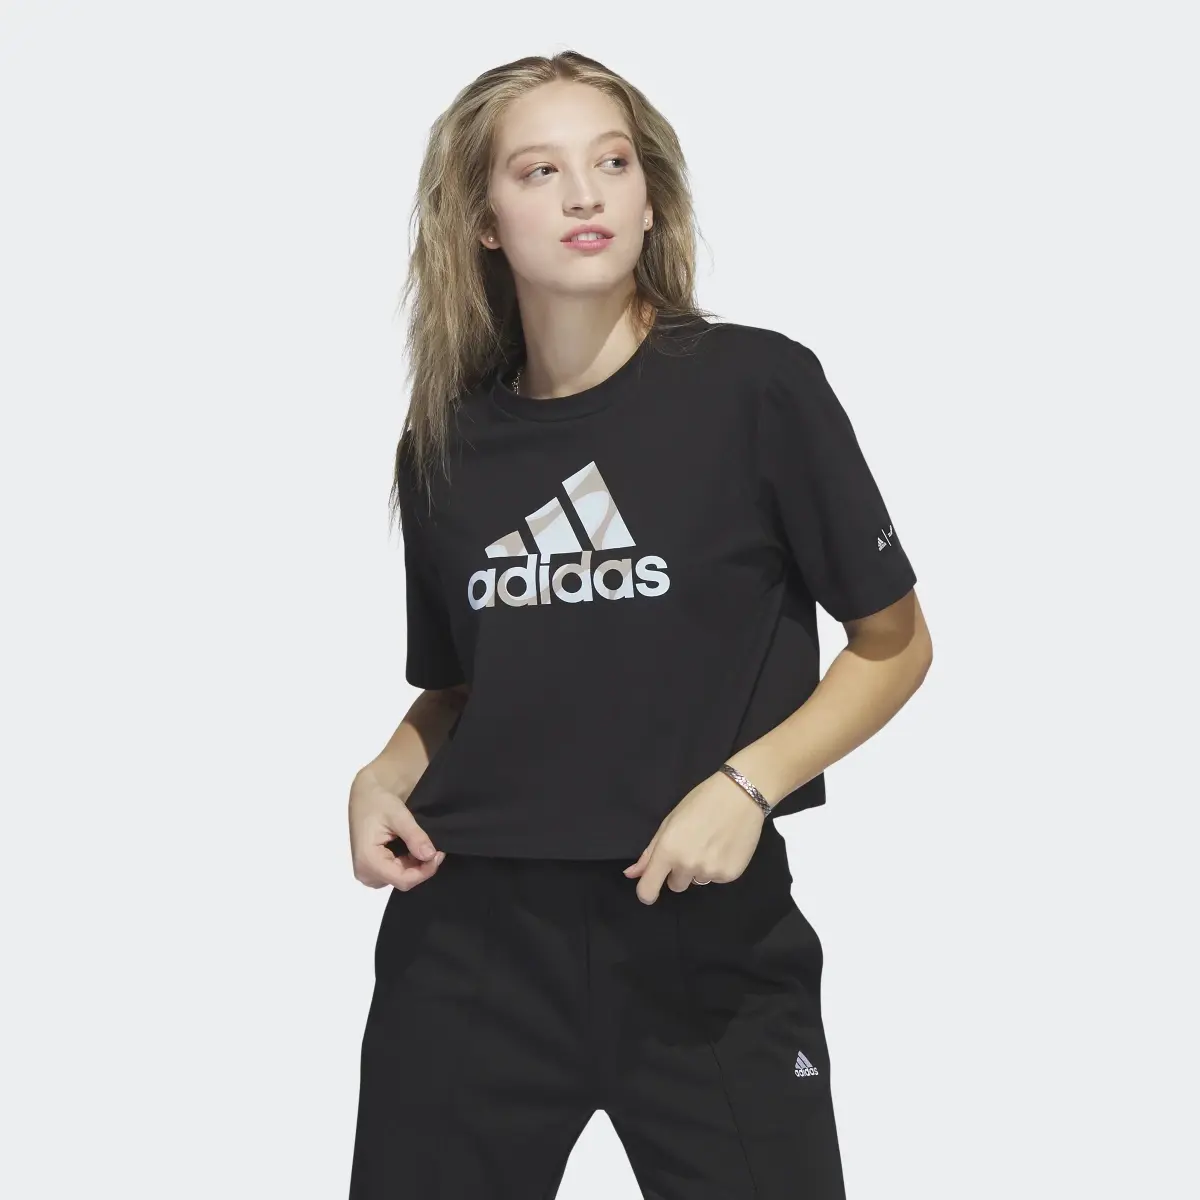 Adidas T-shirt Marimekko Crop. 2